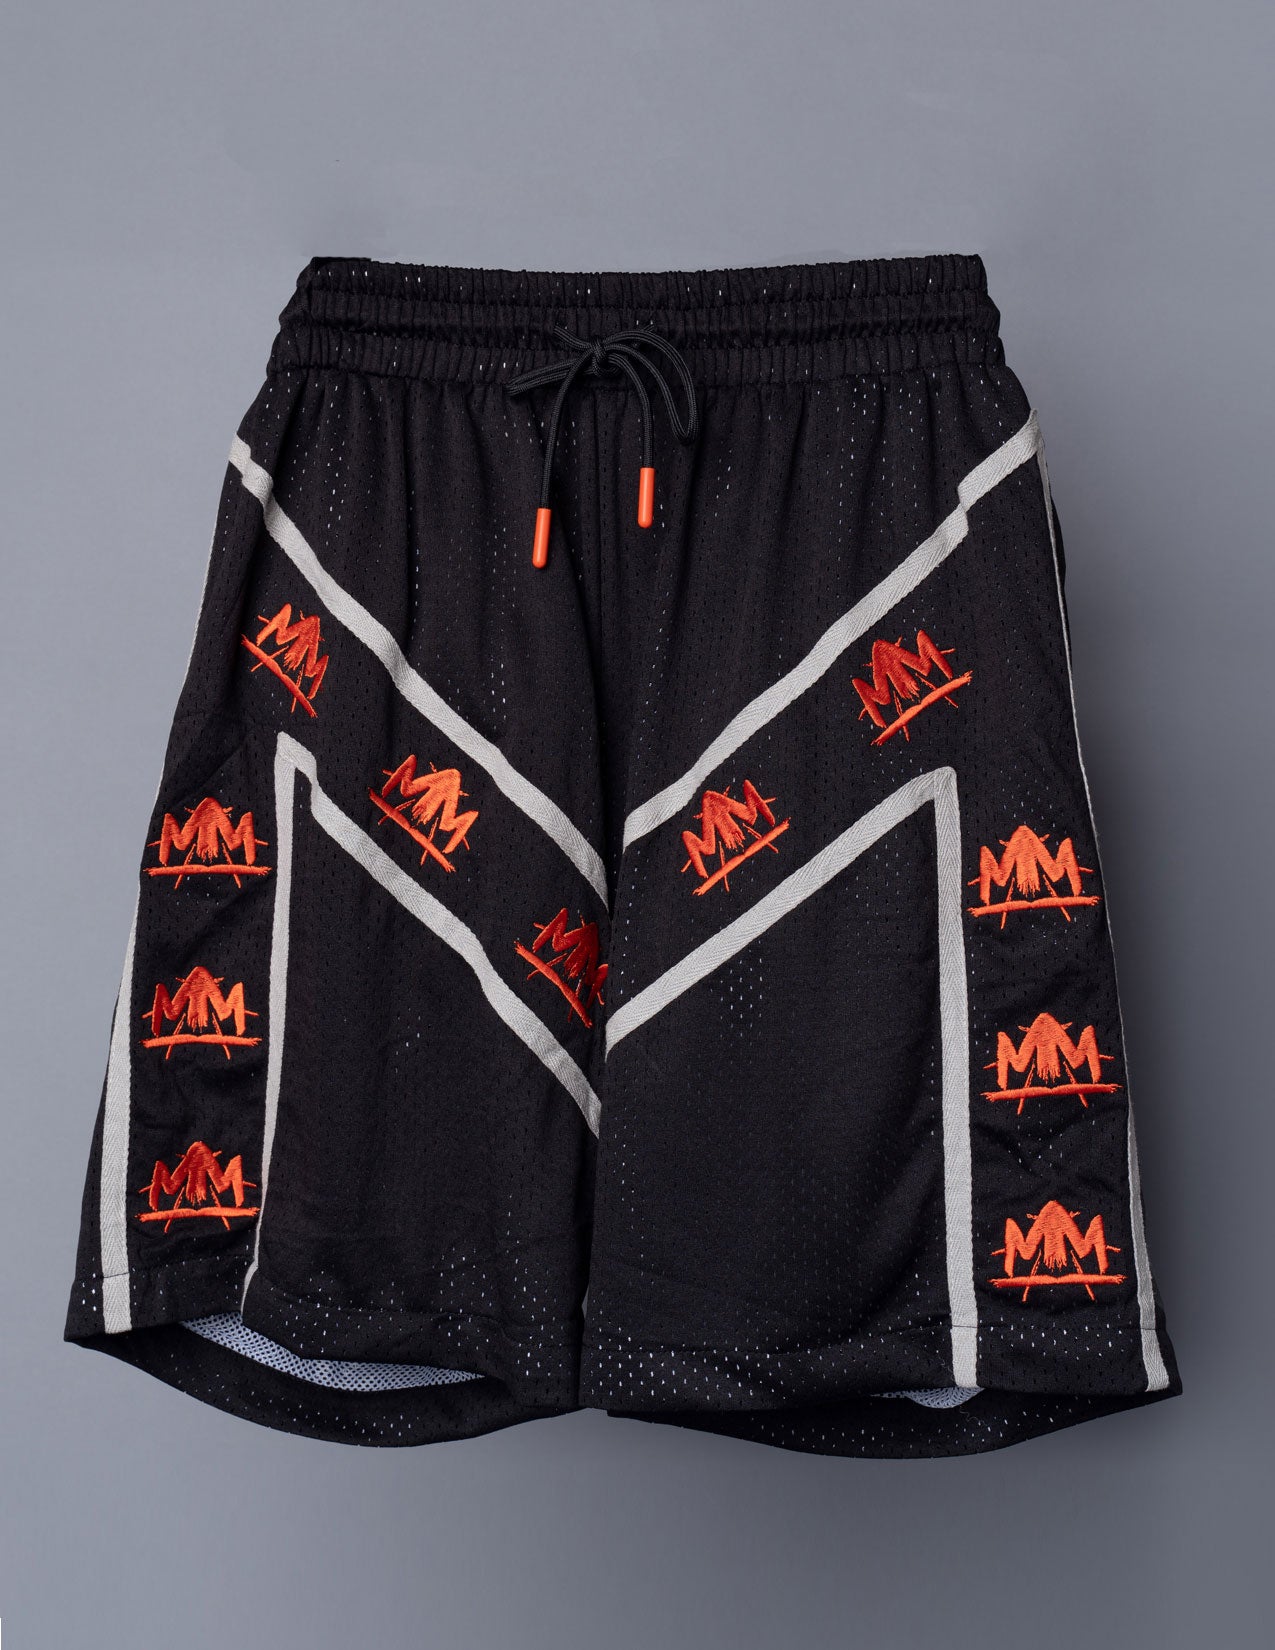 MM Pro Basketball Shorts